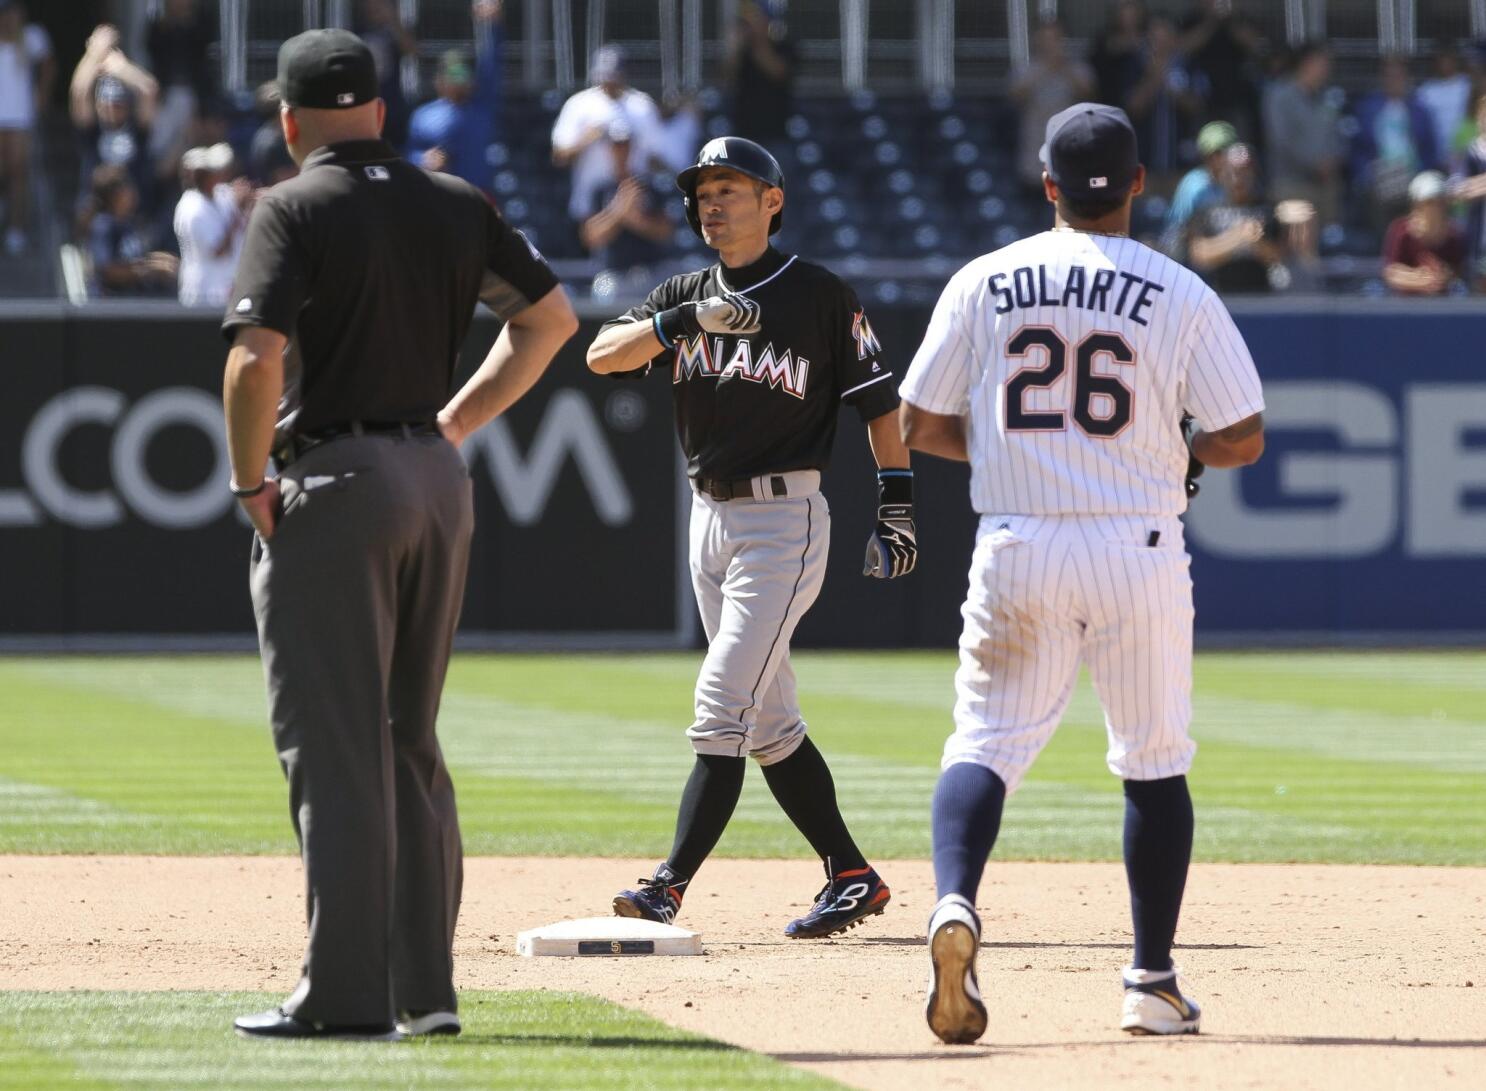 Ichiro blasts Pete Rose in Ichiro sort of way - The San Diego Union-Tribune